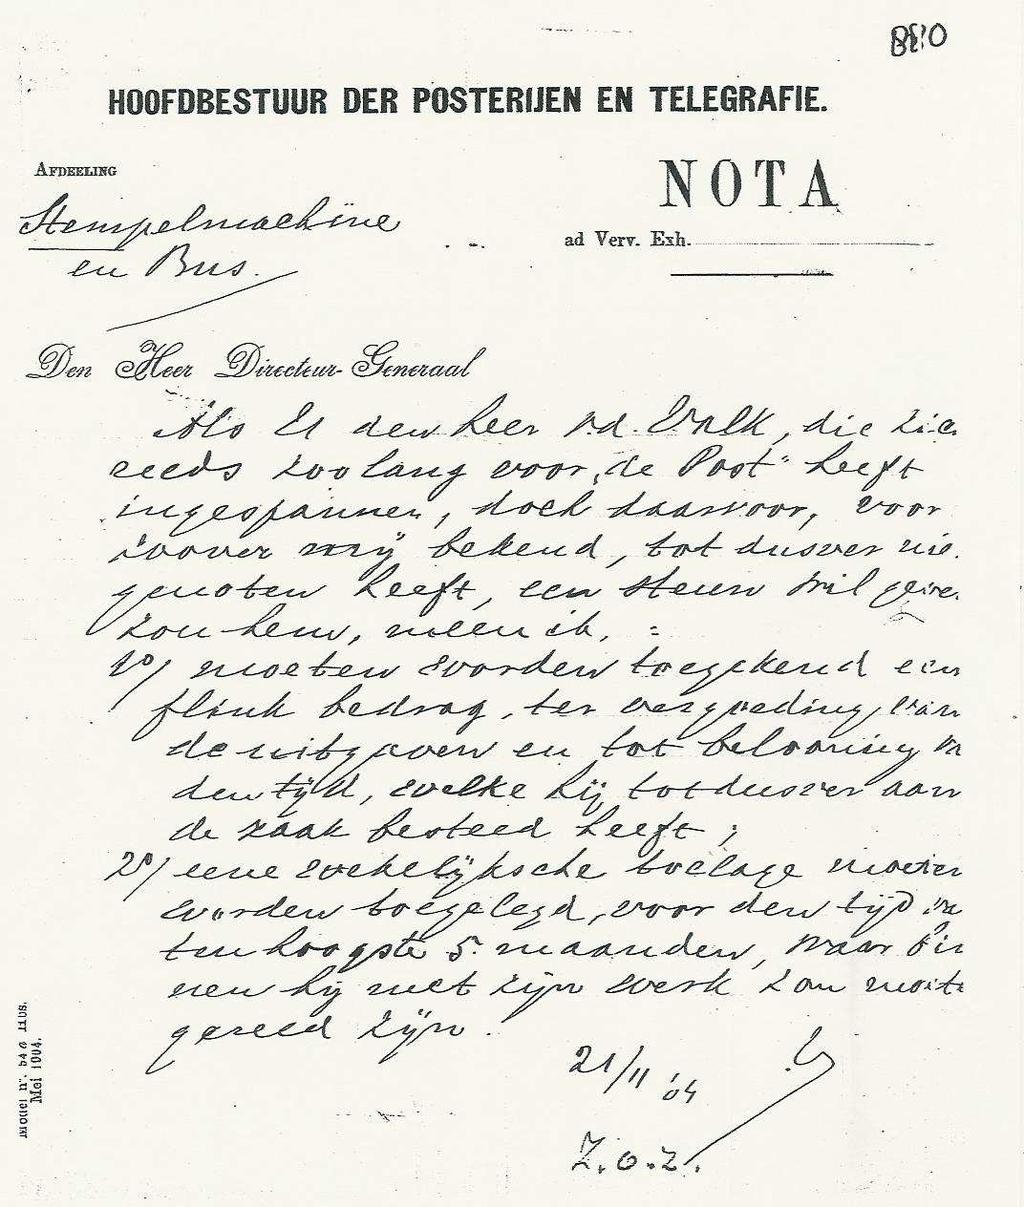 ARTIKEL Op 21 november 1904 neemt administrateur De Bloeme contact op met de Directeur- Generaal om in elk geval aan Van der Valk een beloning toe te kennen voor het werk, dat hij totnogtoe aan de